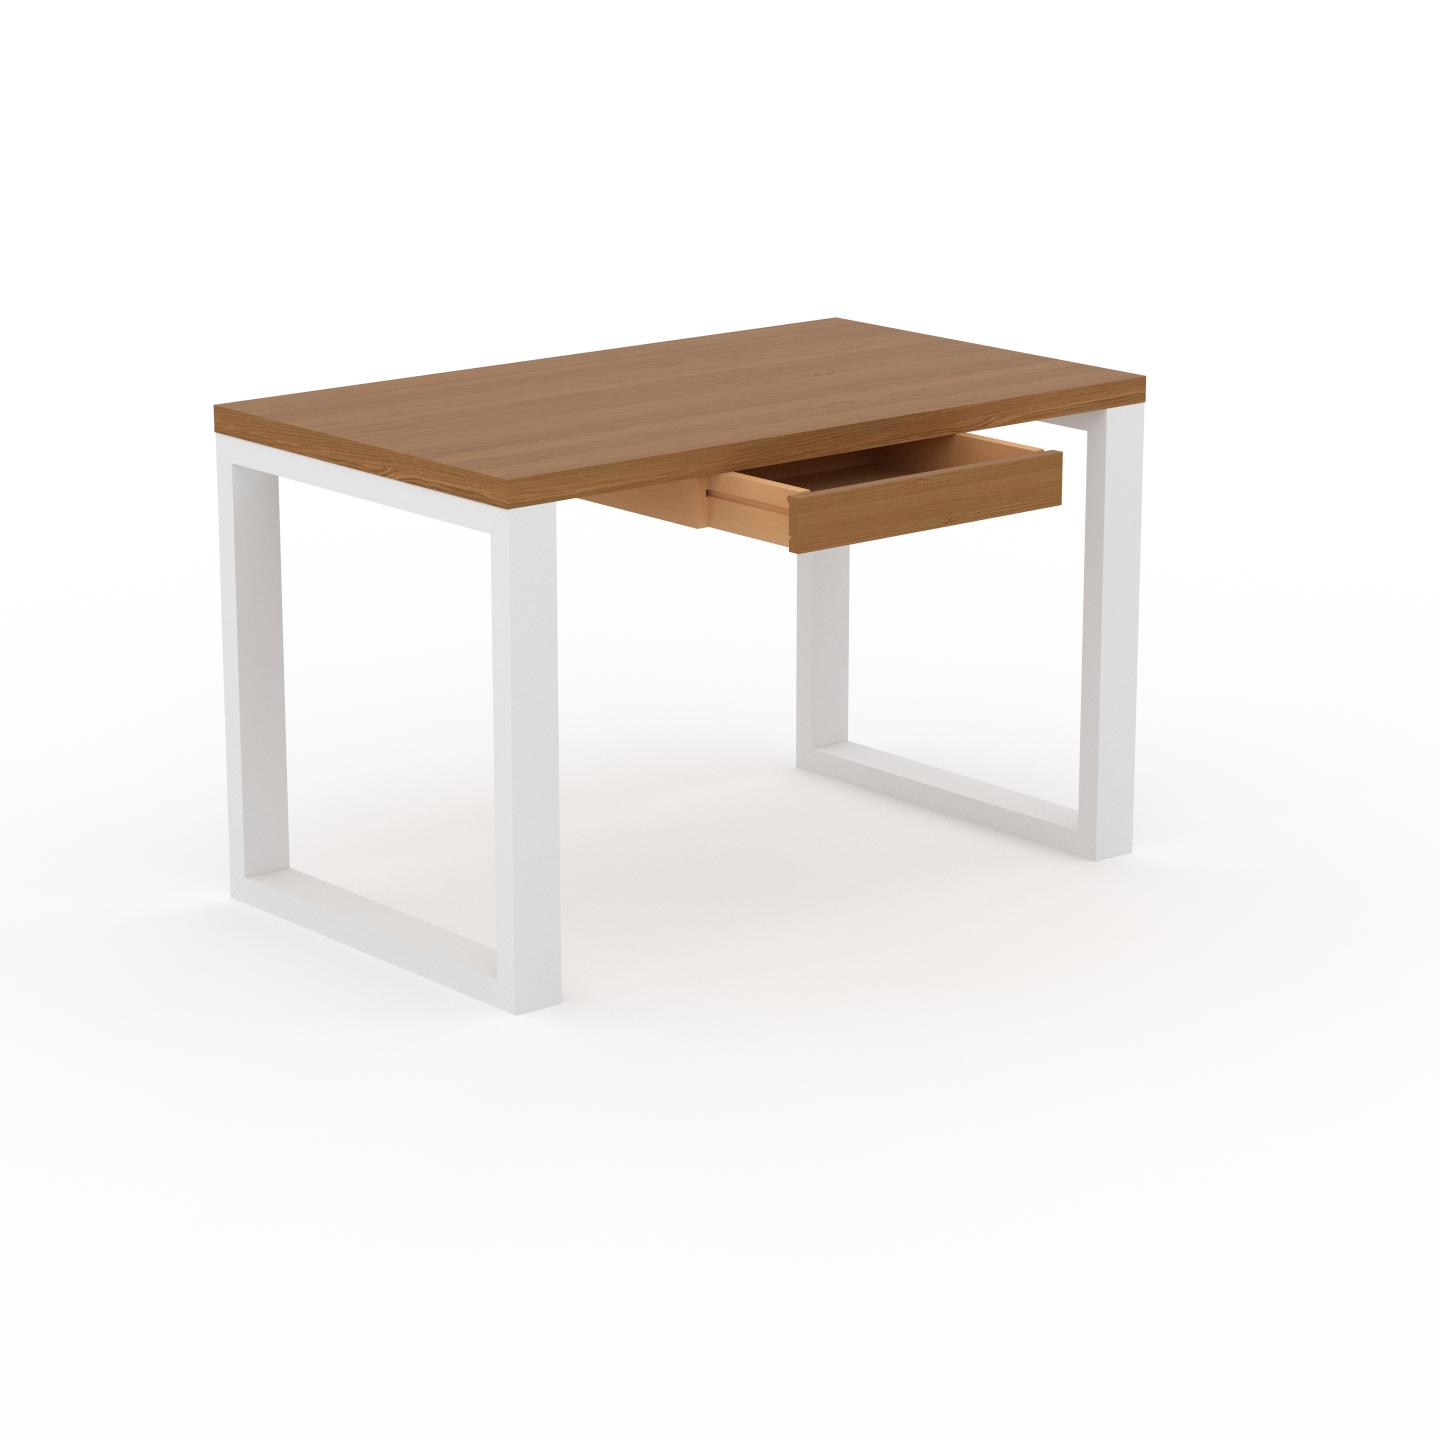 MYCS Schreibtisch Massivholz Eiche - Moderner Massivholz-Schreibtisch: mit 1 Schublade/n - Hochwertige Materialien - 120 x 75 x 70 cm, konfigurierbar